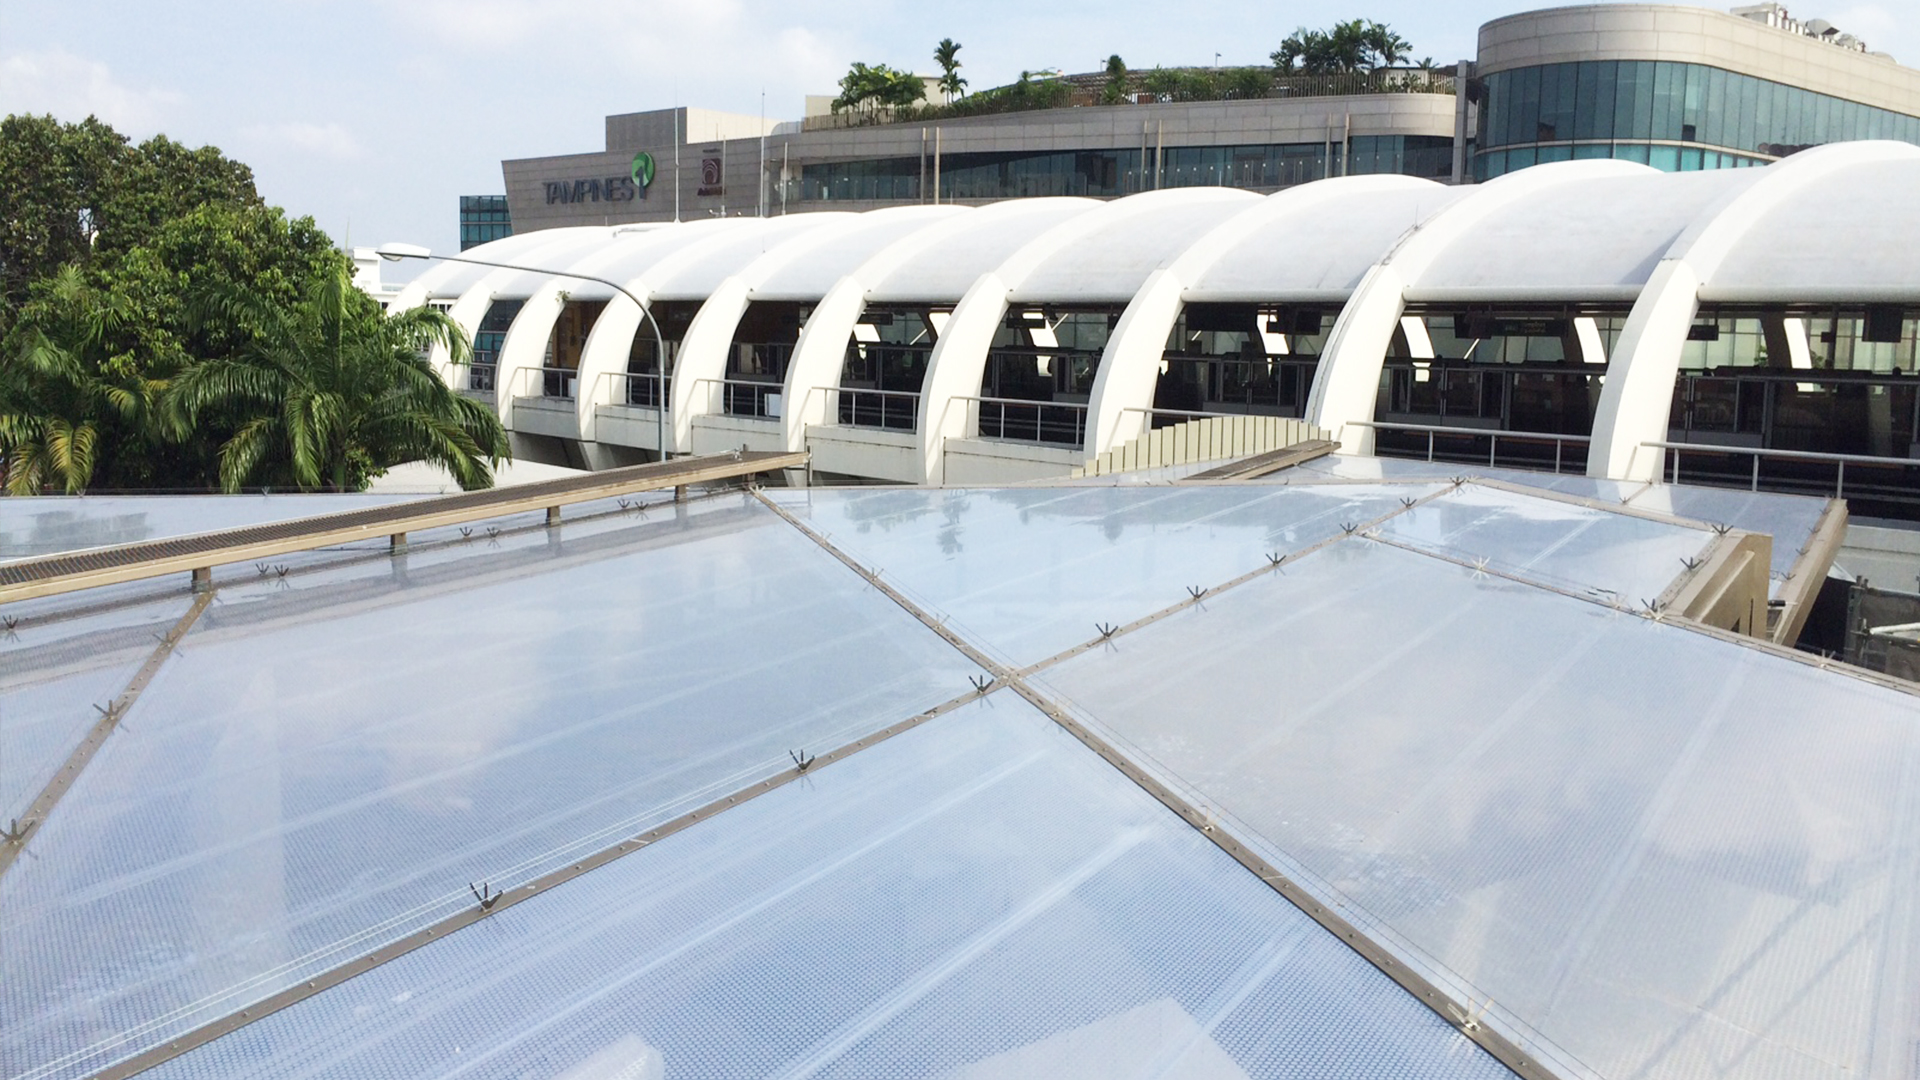 Das Texlon ETFE Vordach bietet den Besuchern, die die Tampines Mall über die MRT-Station Tampines besuchen, Schutz vor Sonne und Regen.